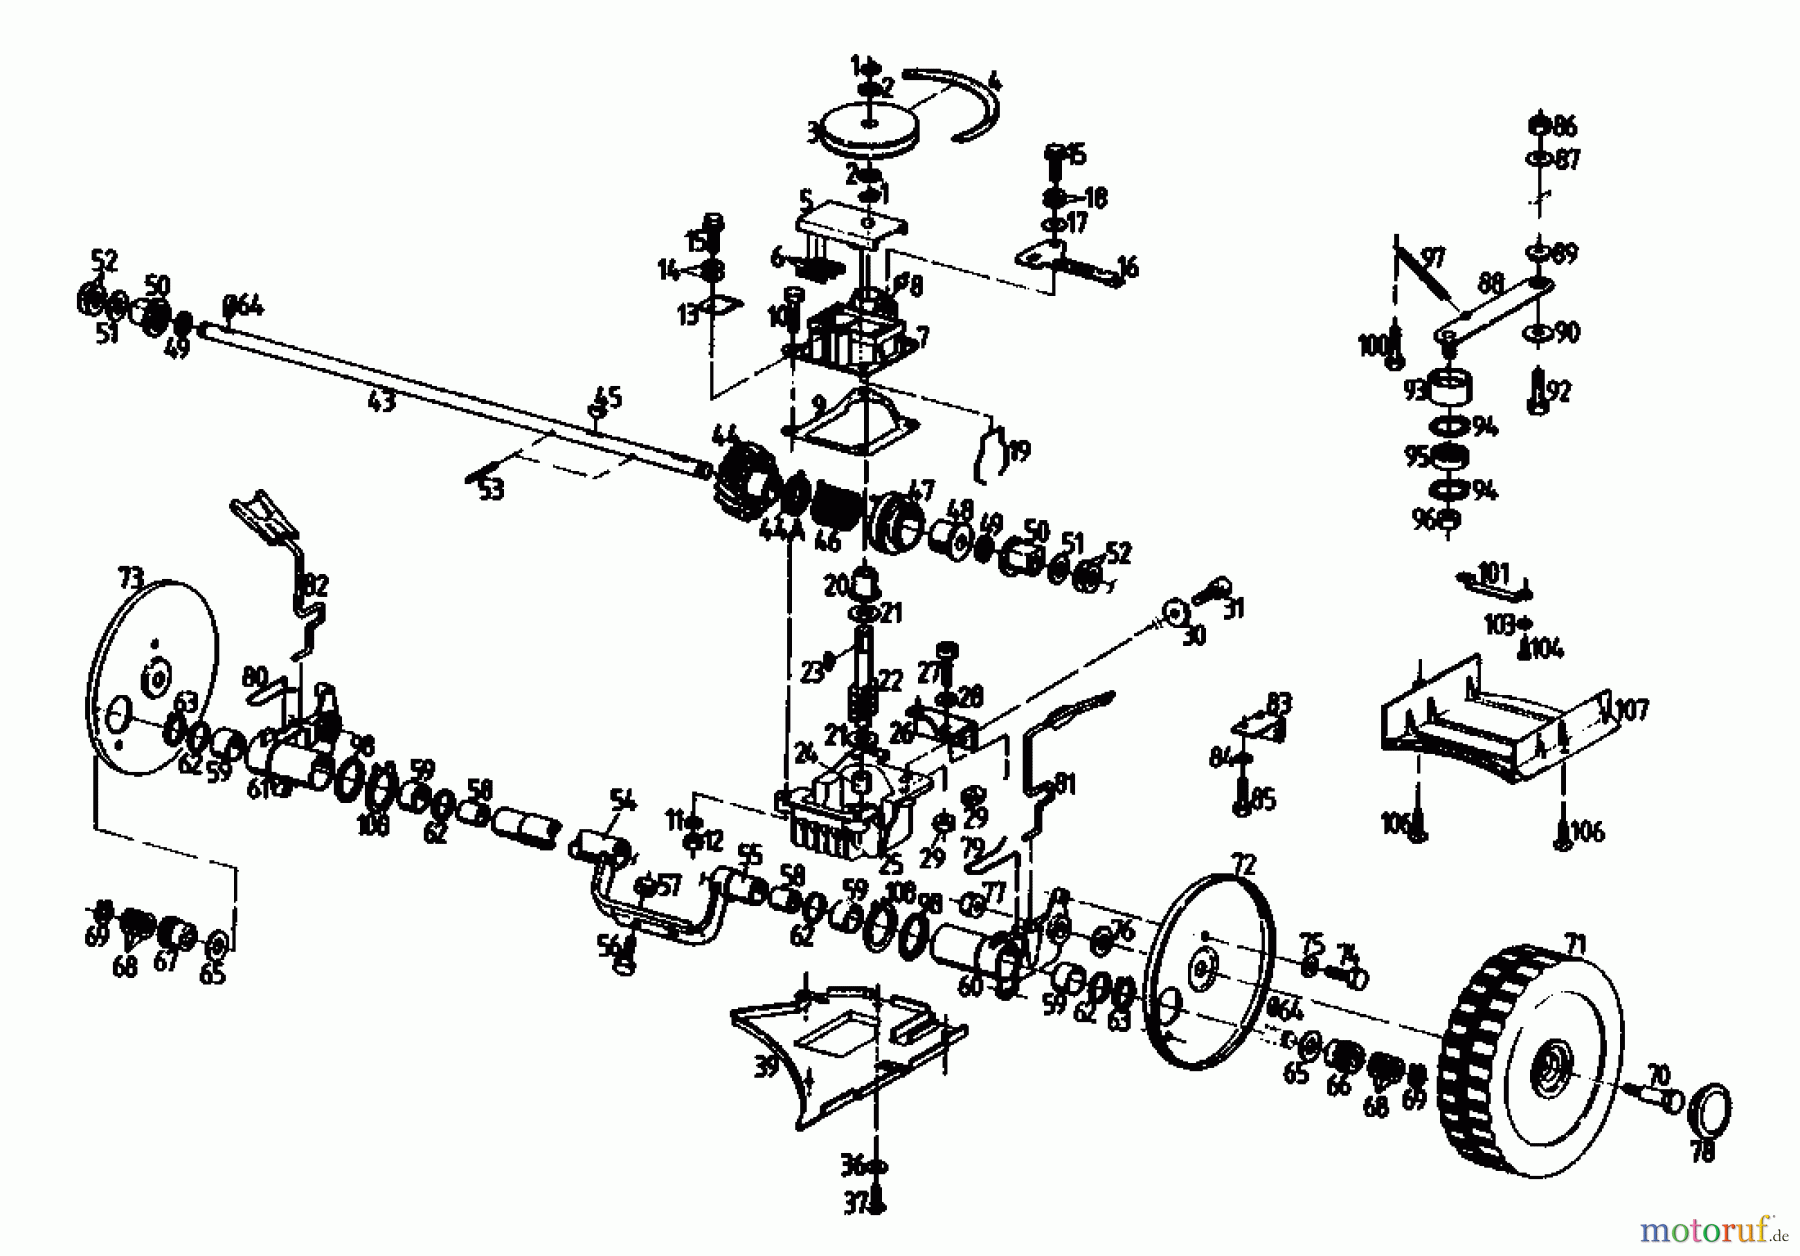  Gutbrod Motormäher mit Antrieb HB 47 REL 02847.09  (1990) Getriebe